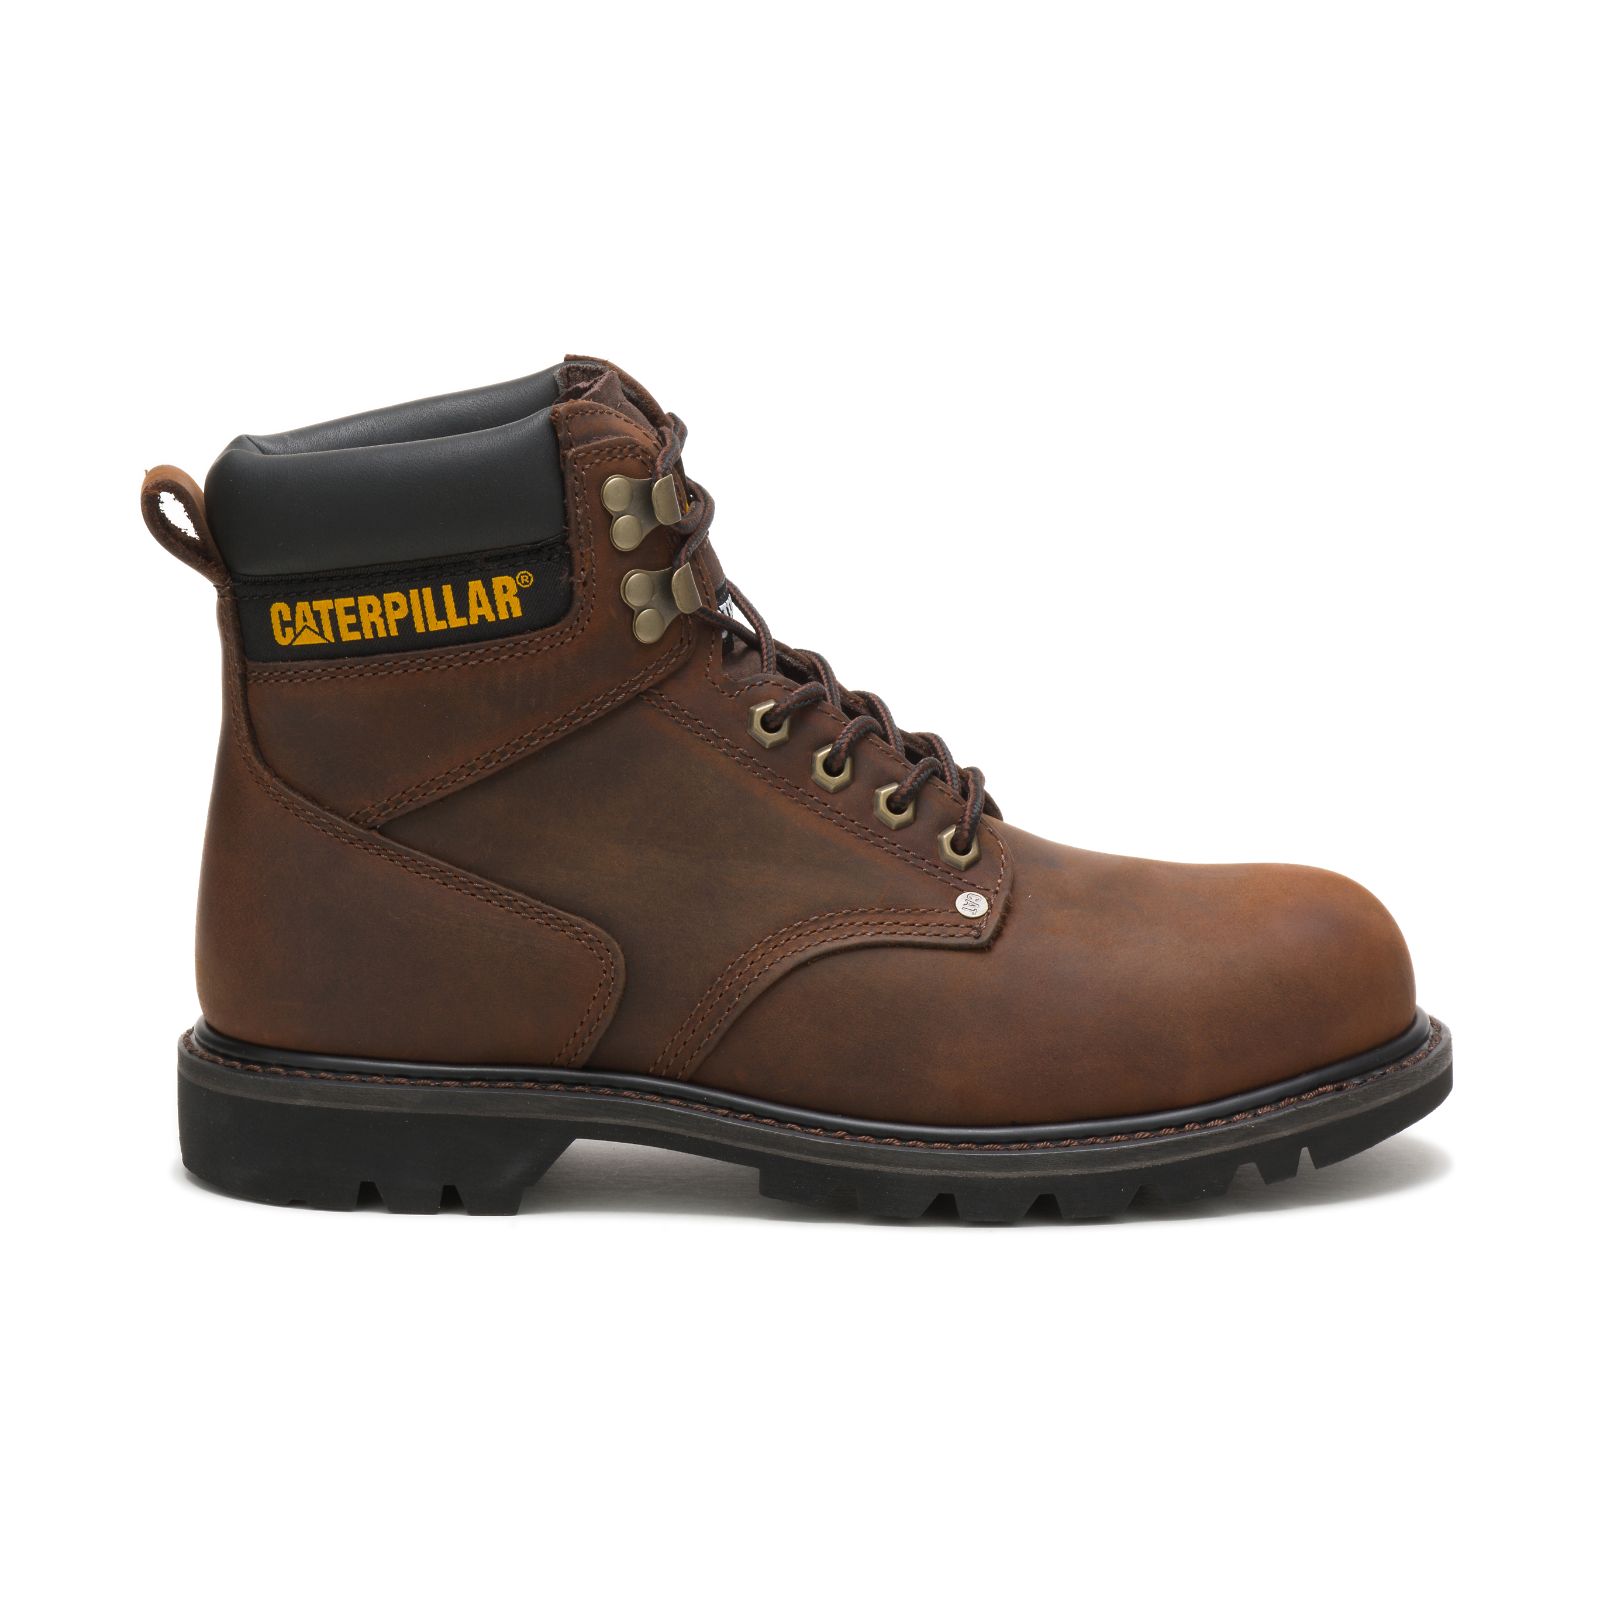 Caterpillar Boots Online - Caterpillar Second Shift Steel Toe Mens Work Boots Dark Brown (046132-YPL)